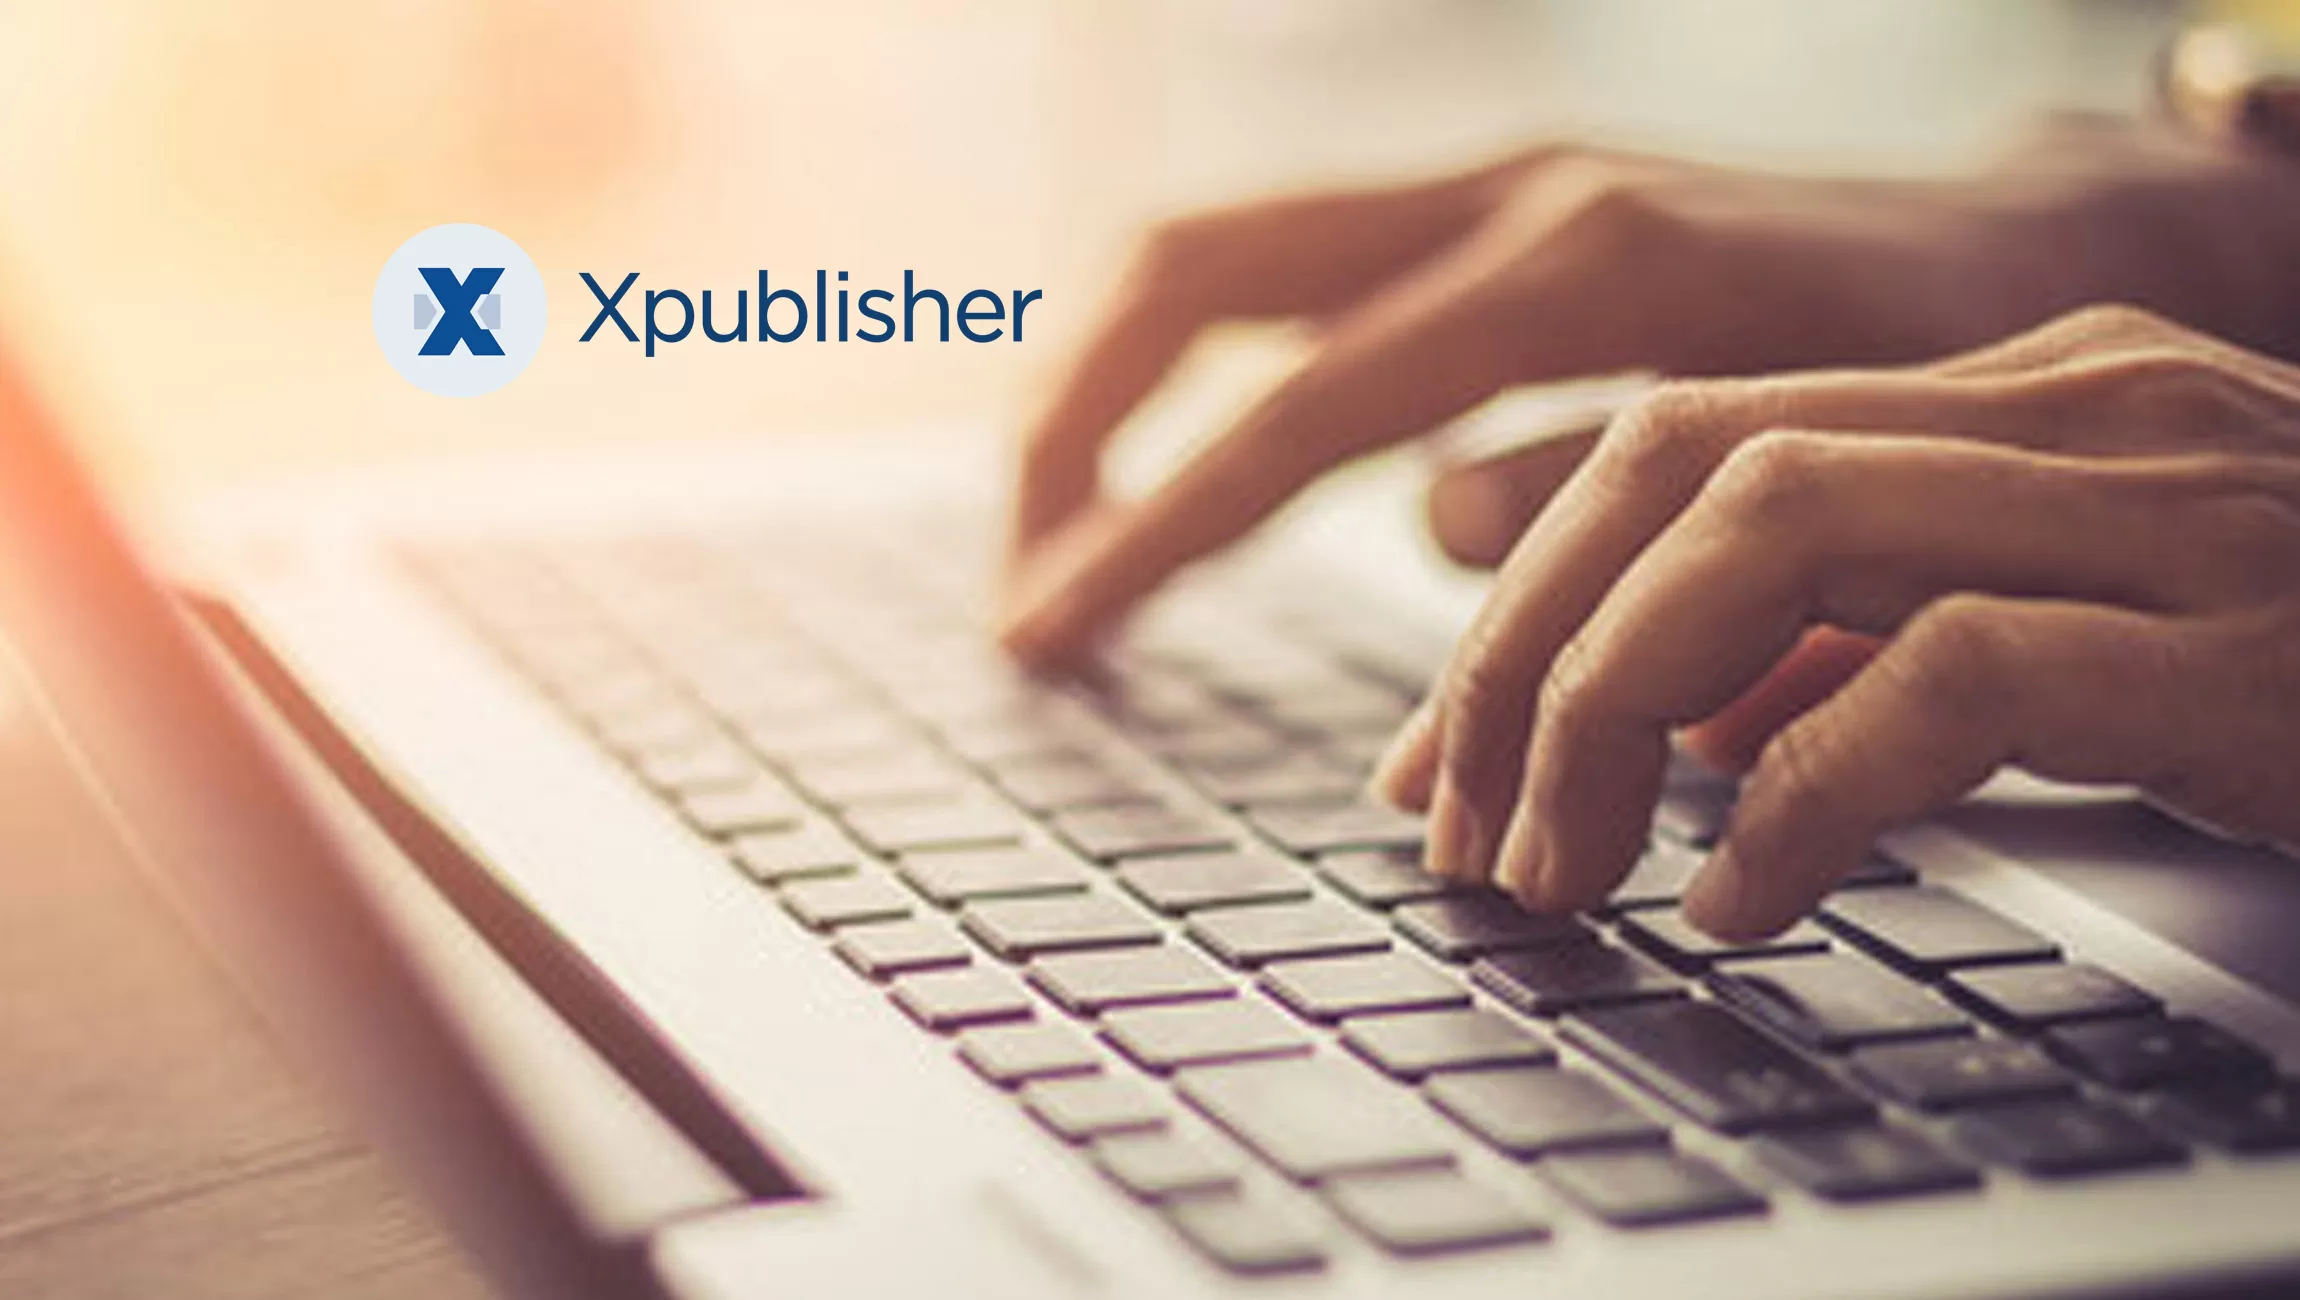 Il Software-as-a-Service Xpublisher porta il publishing a un nuovo livello